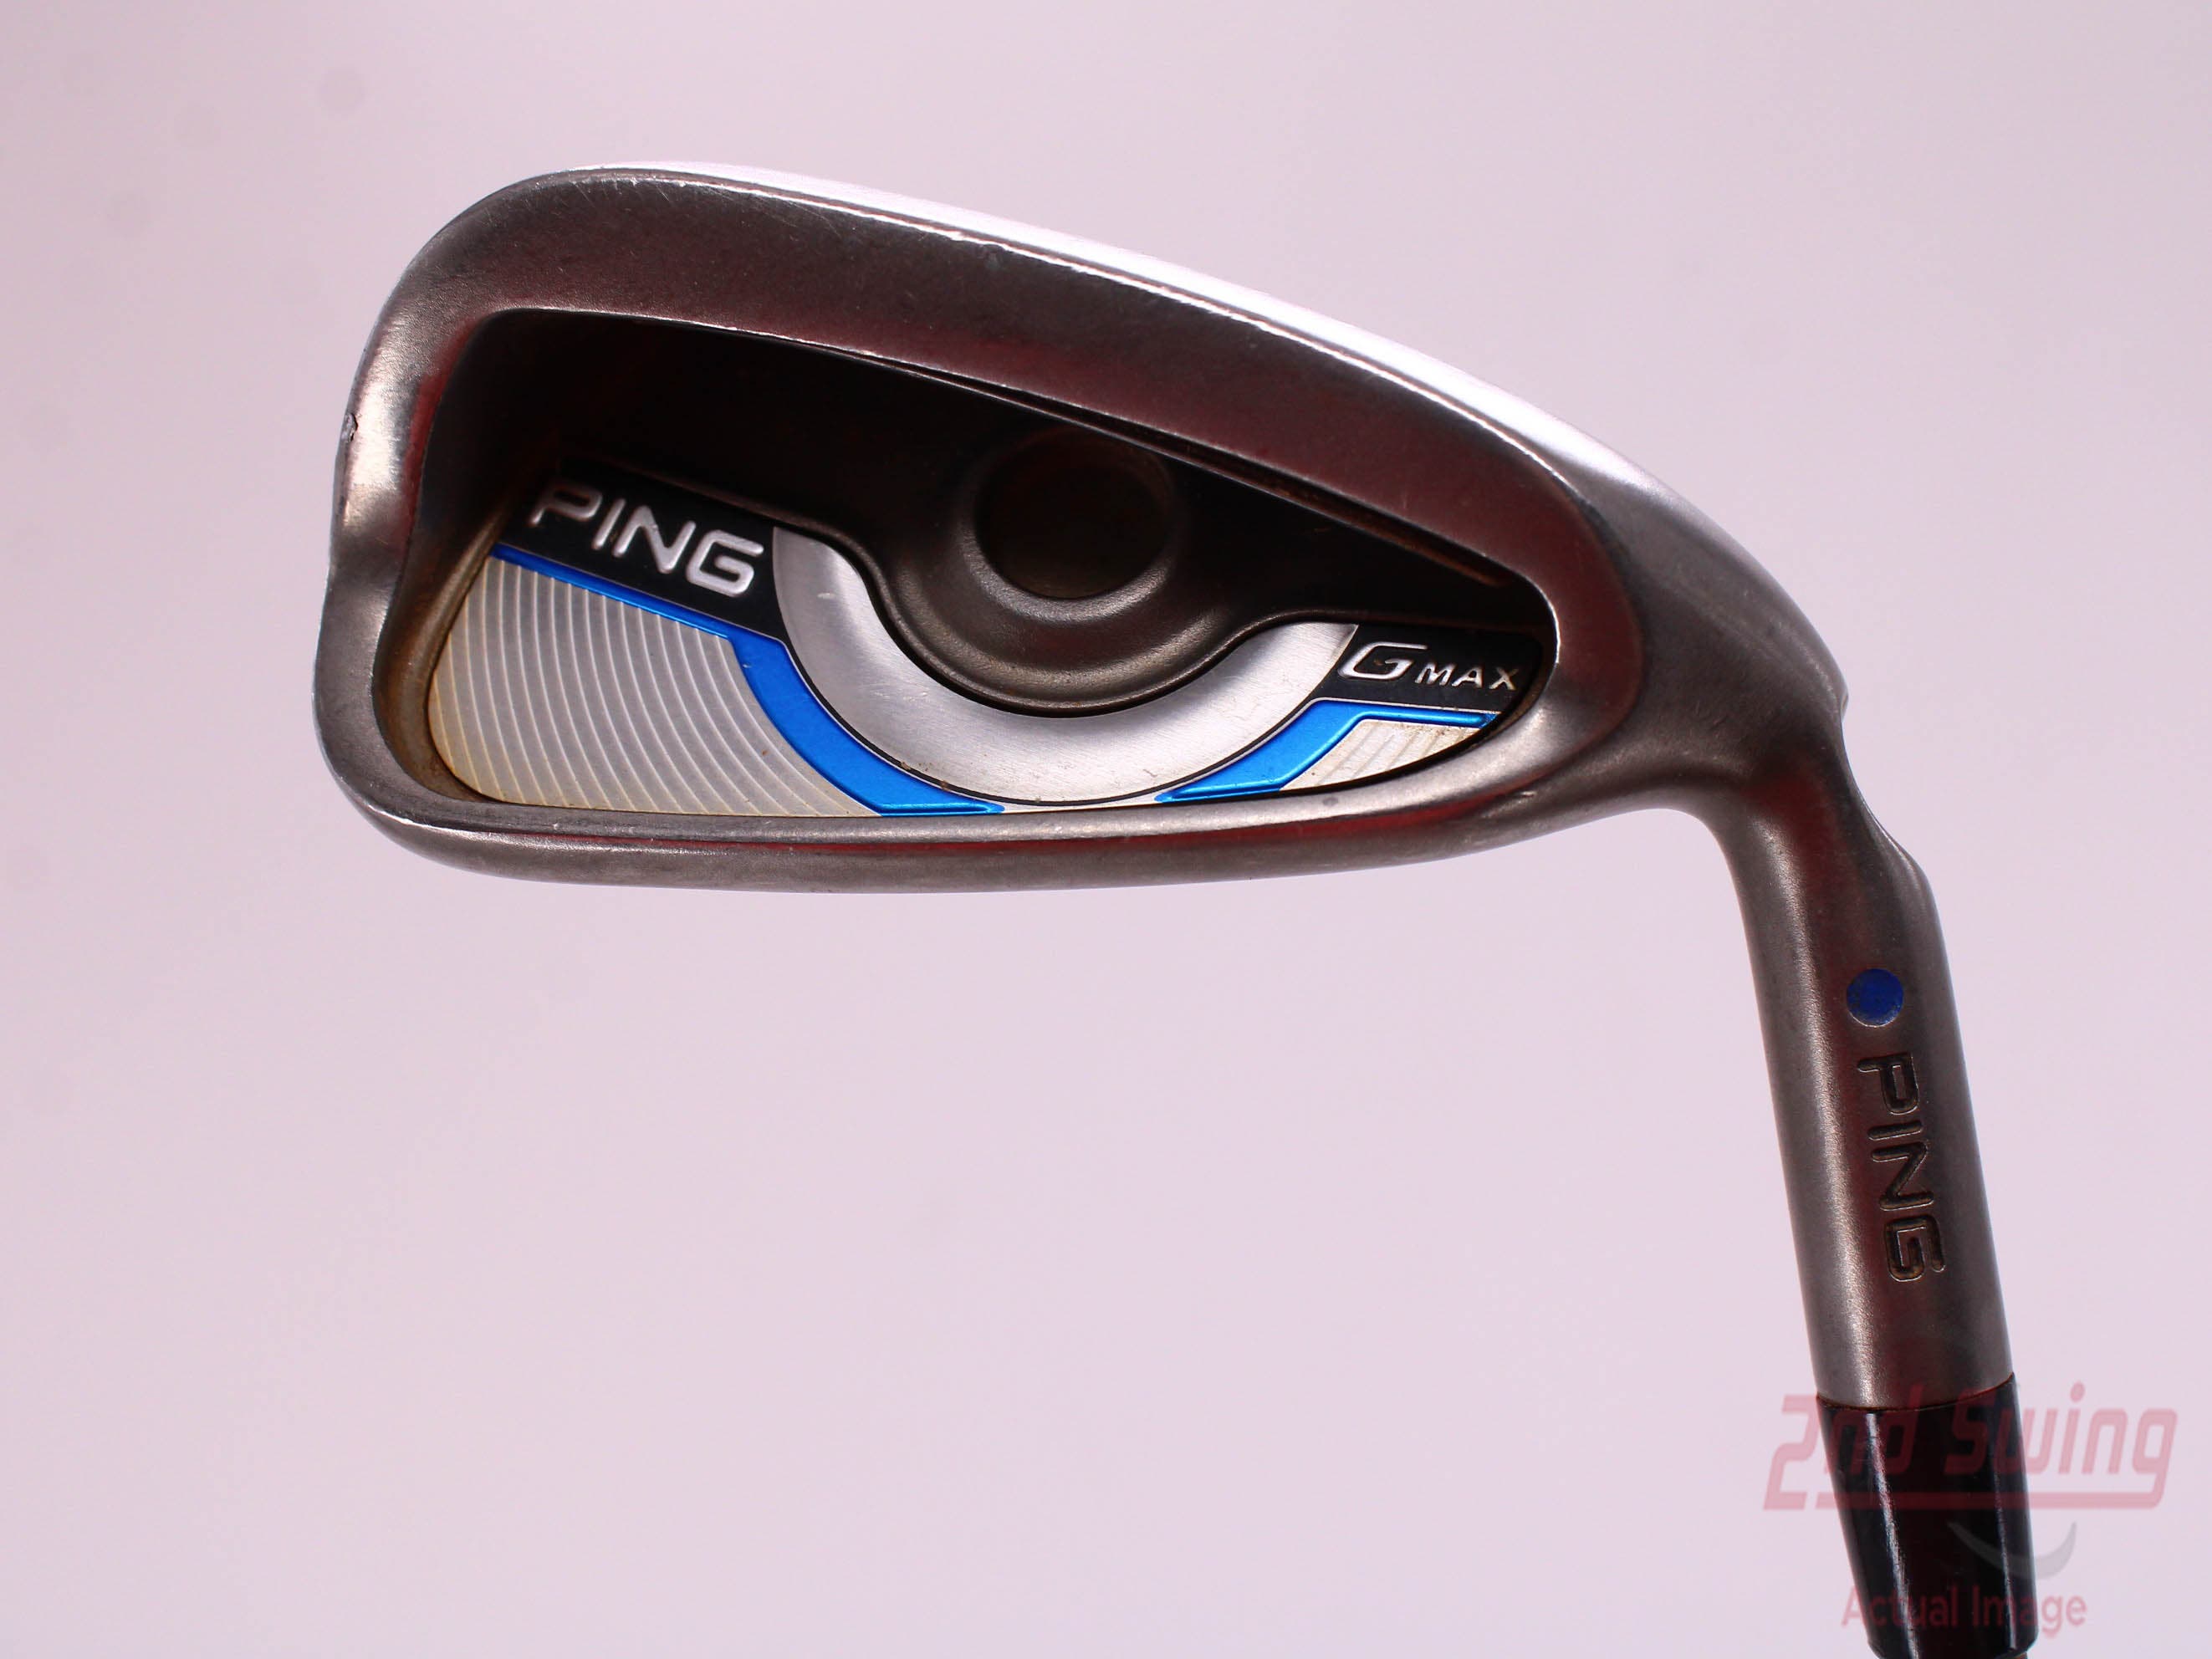 Ping Gmax Single Iron | 2nd Swing Golf